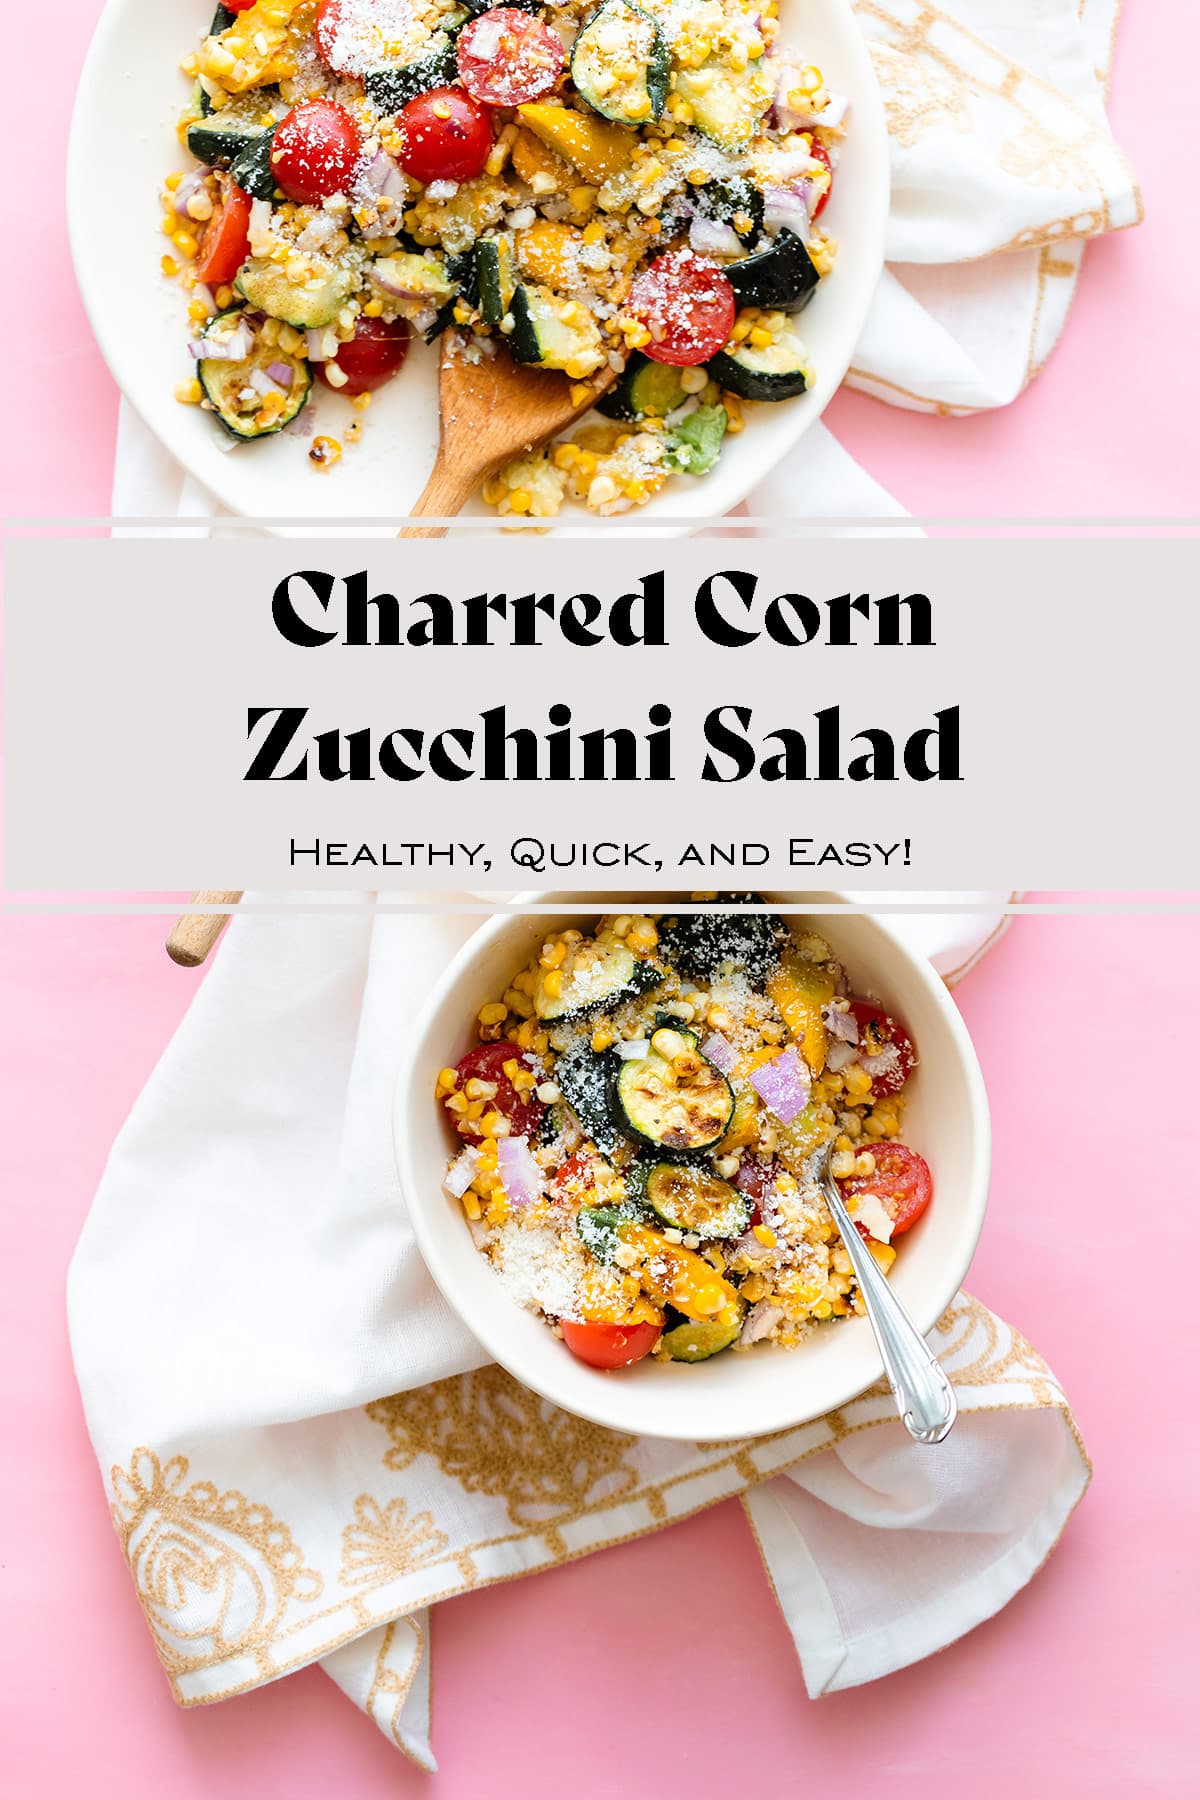 Charred Corn Zucchini Salad with Pecorino